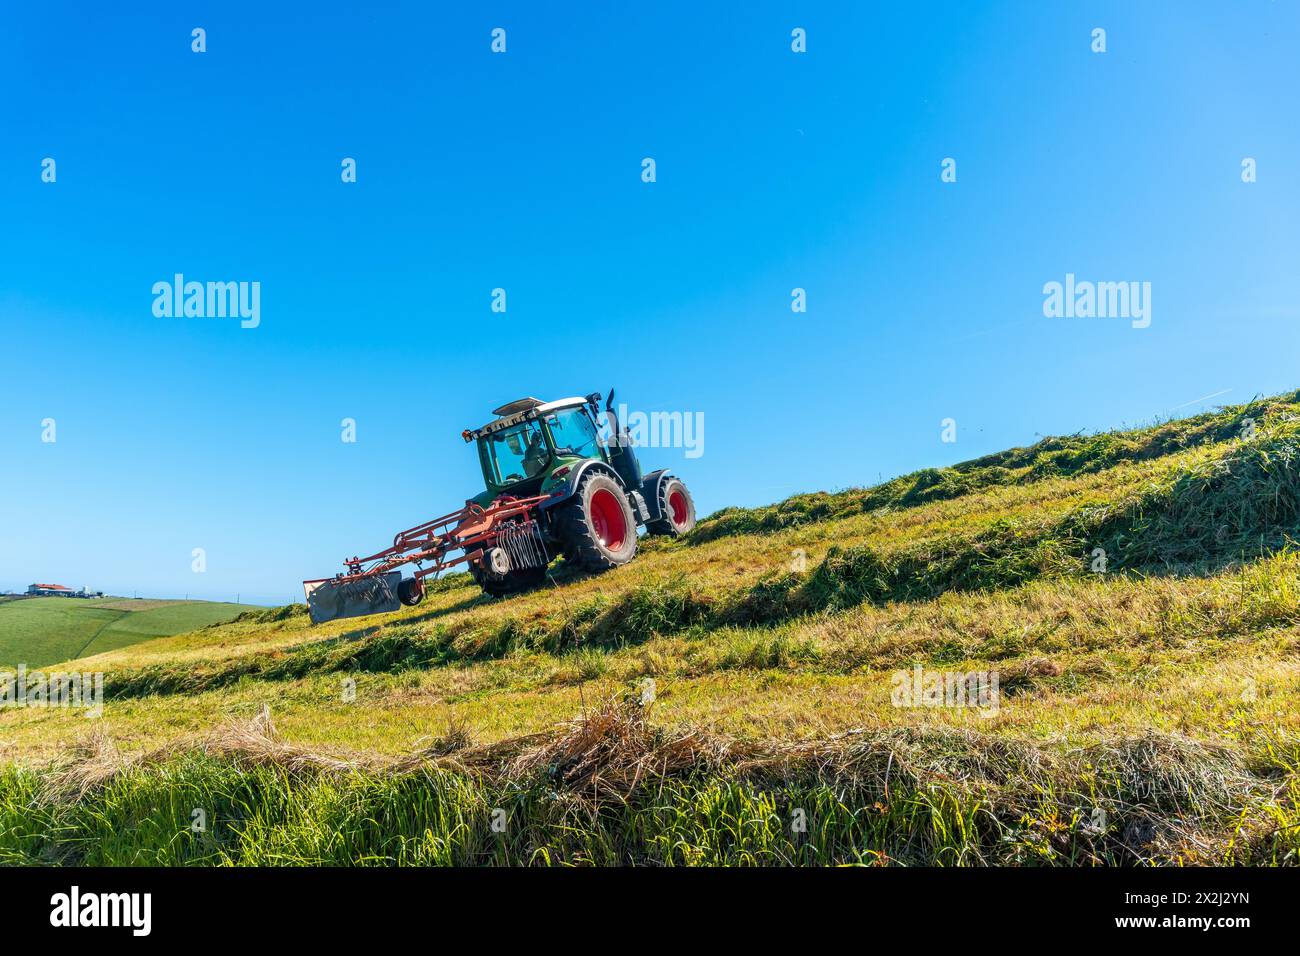 Ein Traktor fährt einen Hang hinunter und pflügt das Gras. Der Himmel ist klar und blau, und die Sonne scheint hell. Die Szene ist friedlich und Stockfoto